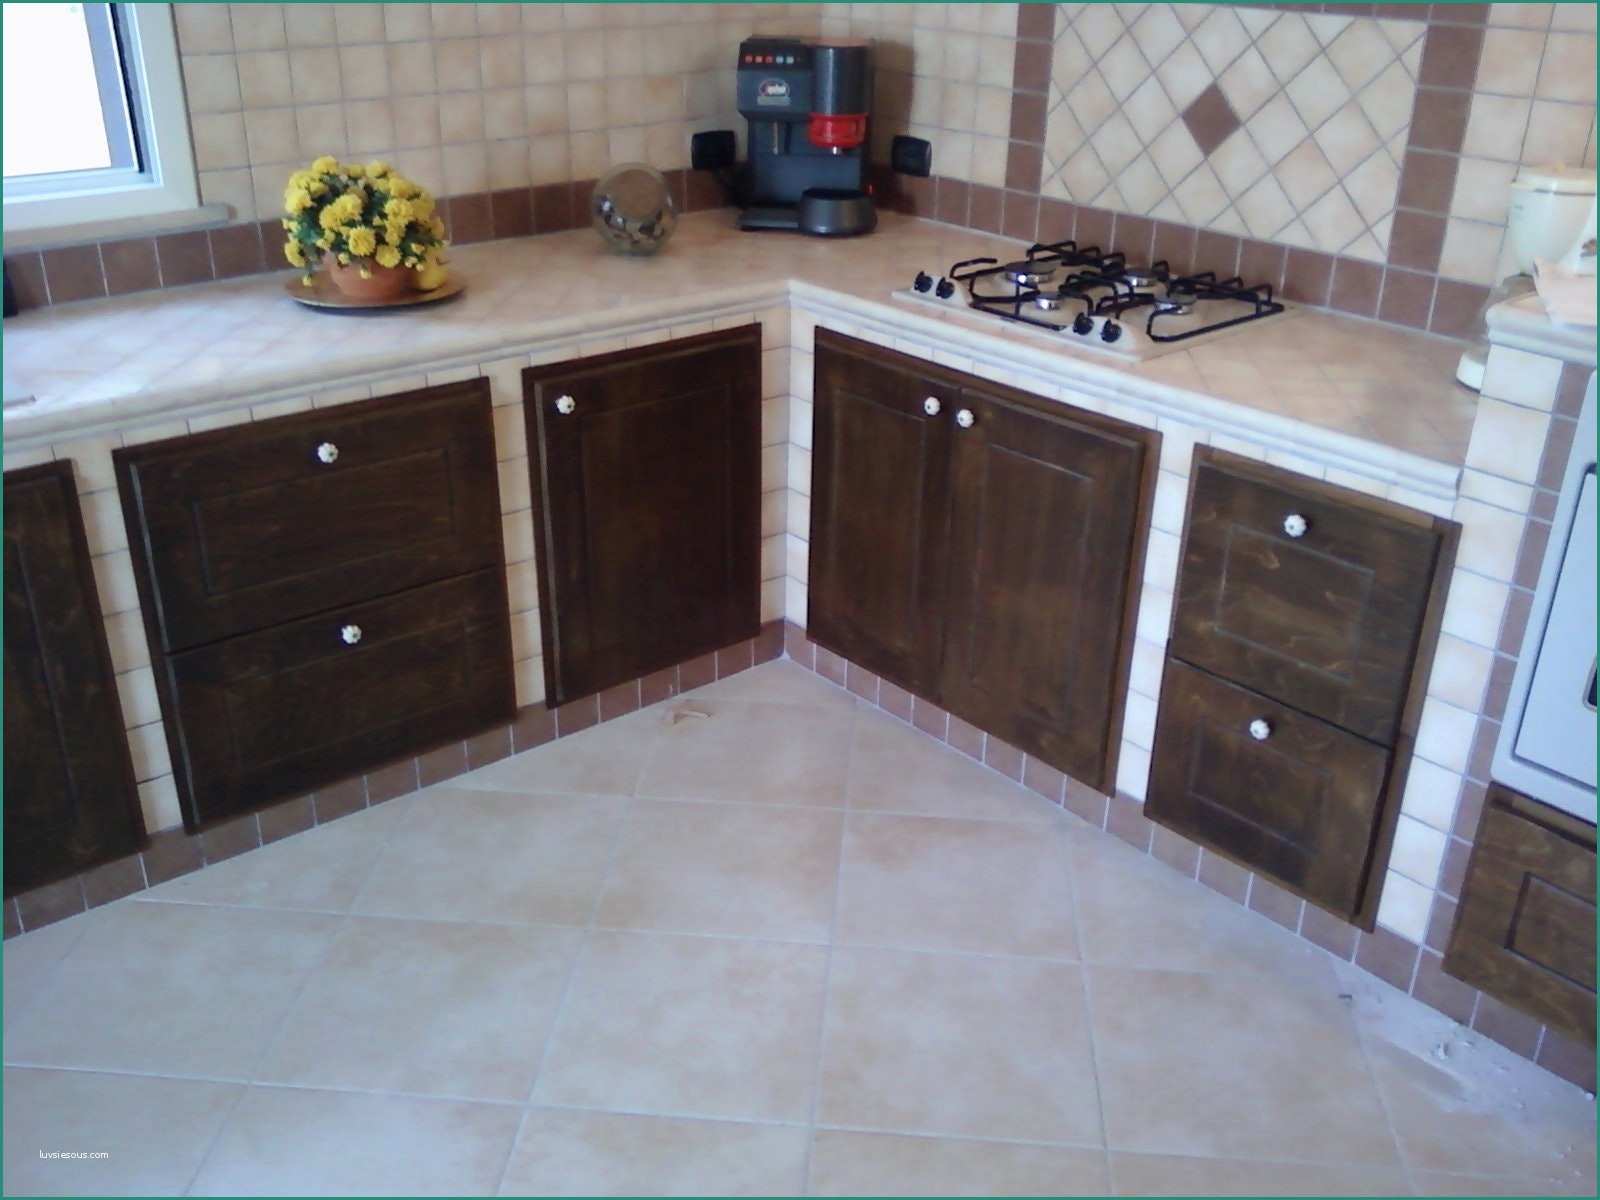 Costruire Una Cucina In Legno E Costruire Mobili Cucina Finest Cucina In Muratura with Costruire